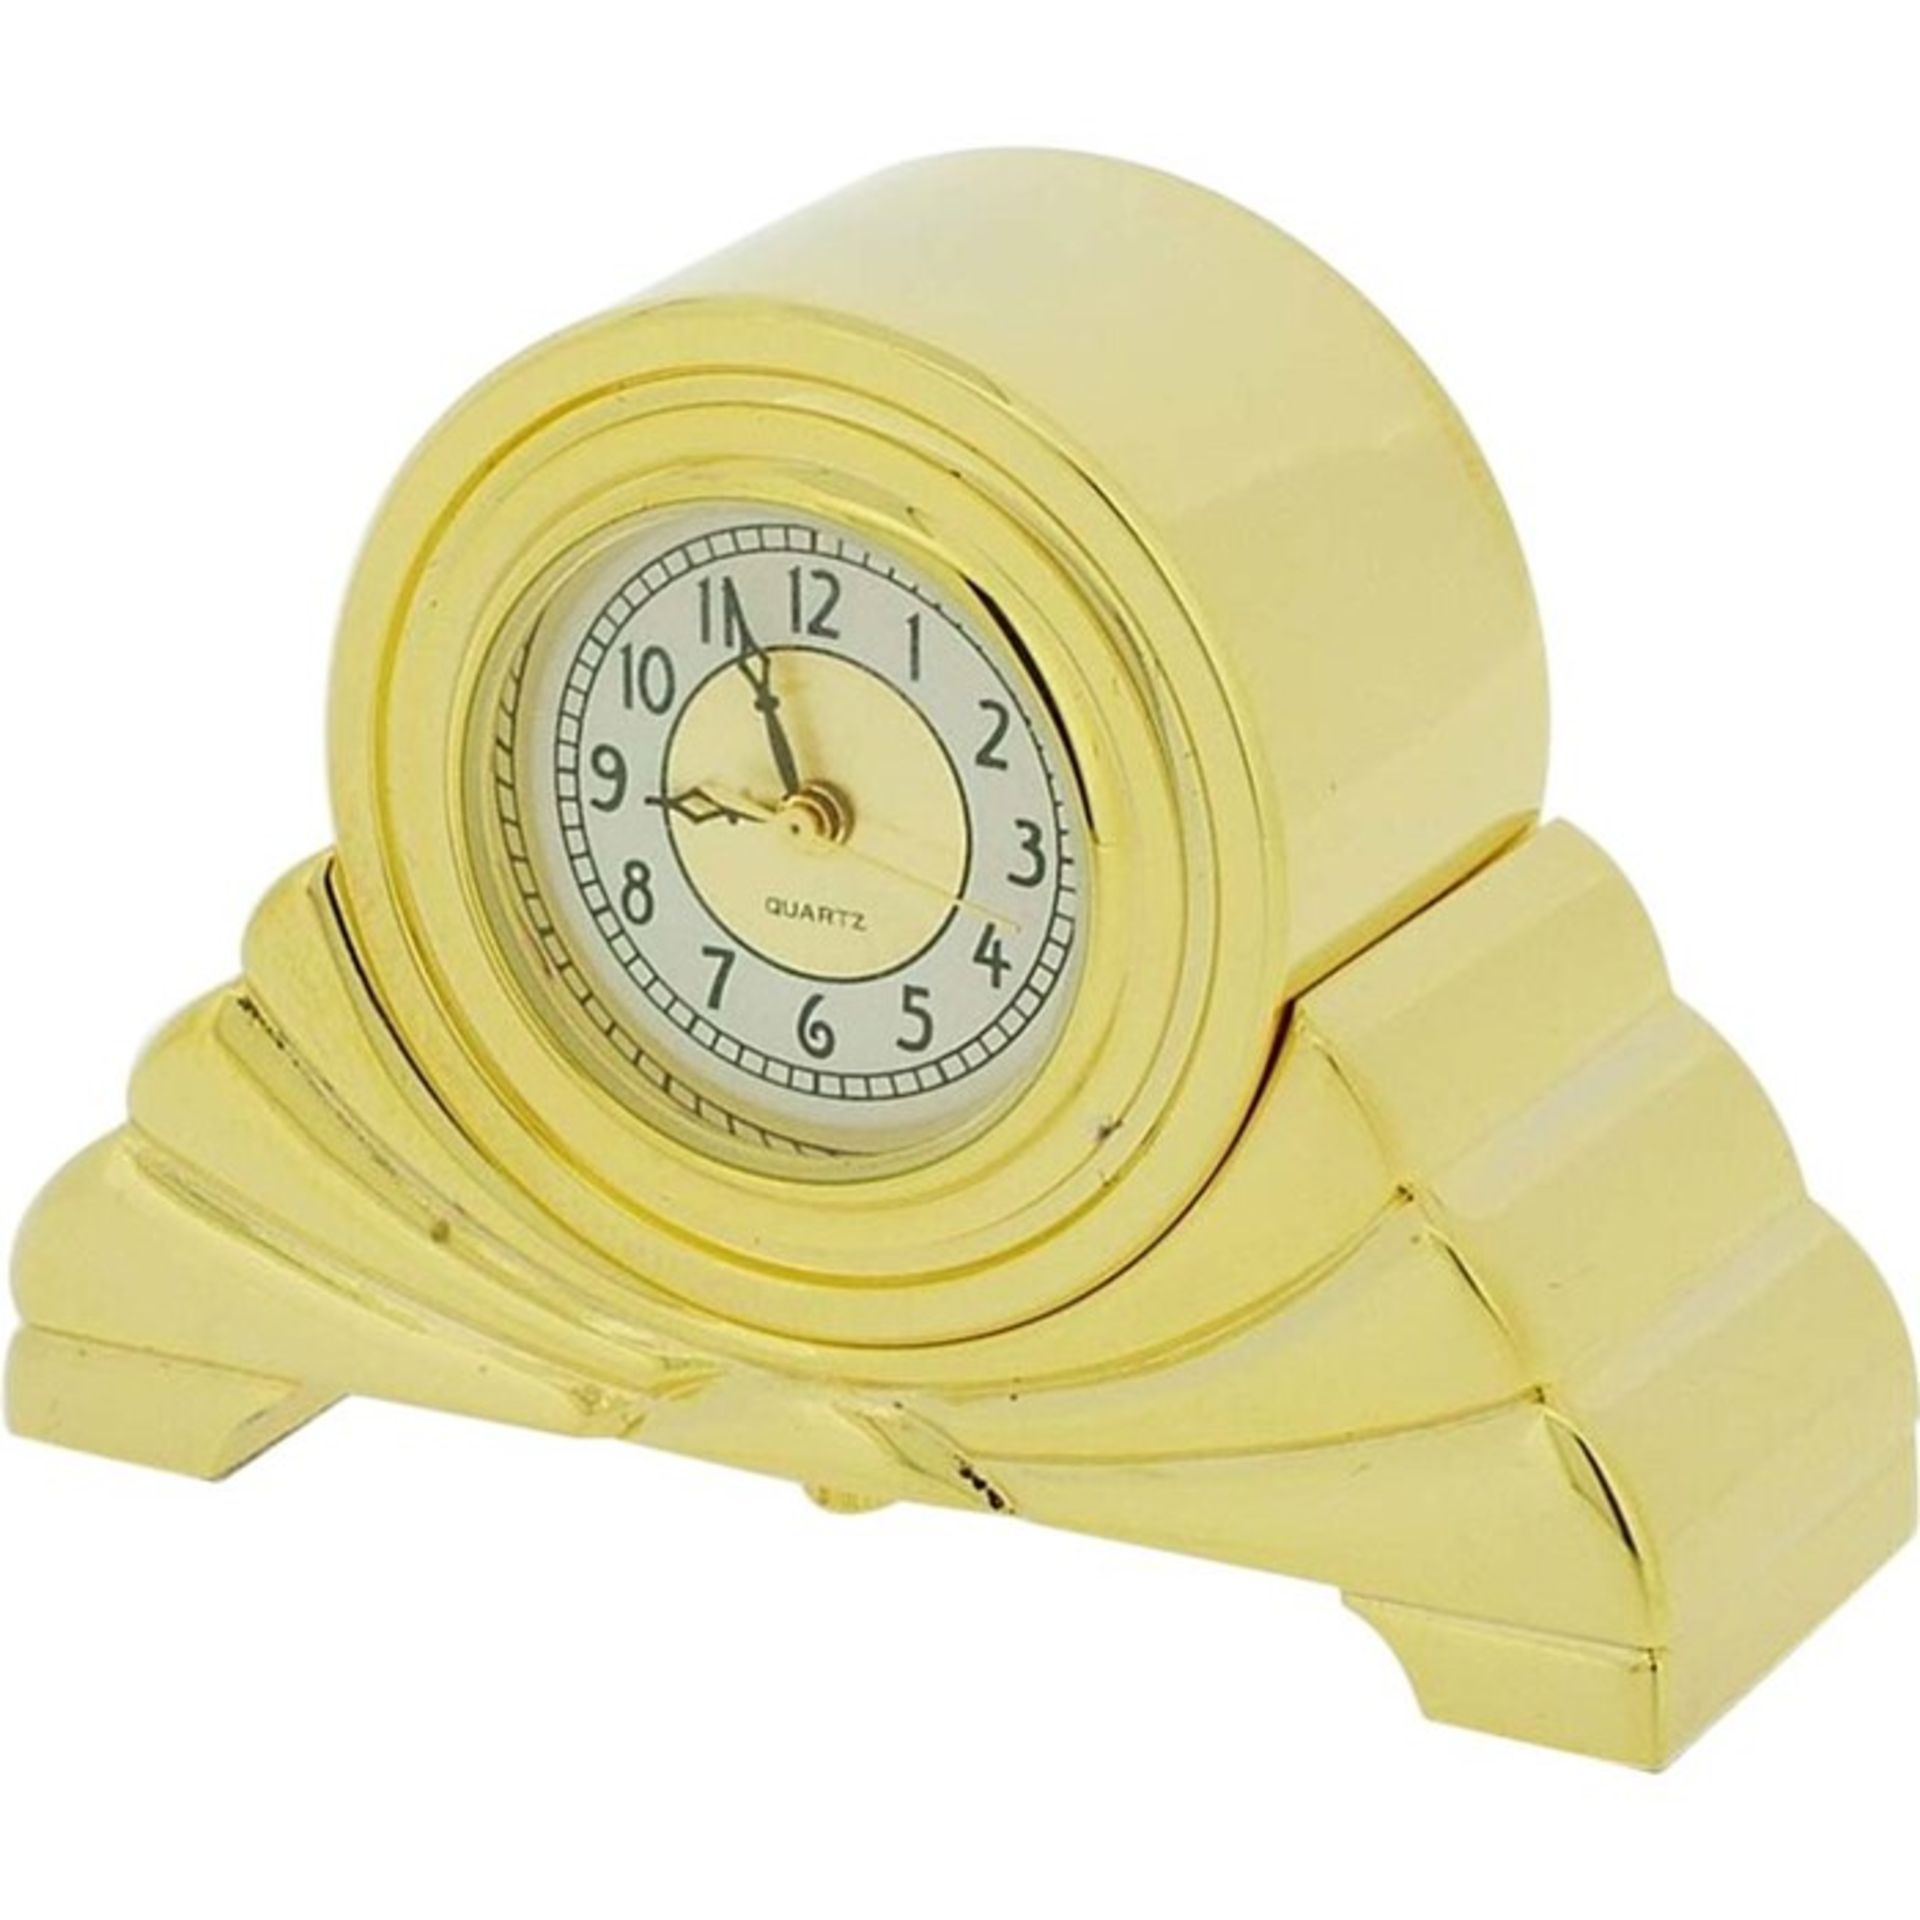 Happy Larry, Mantel Clock (GOLD / 3.6cm H x 5.1cm W x 1.6cm D ) - RRP £33.95 (IPCK1175.15359505 -